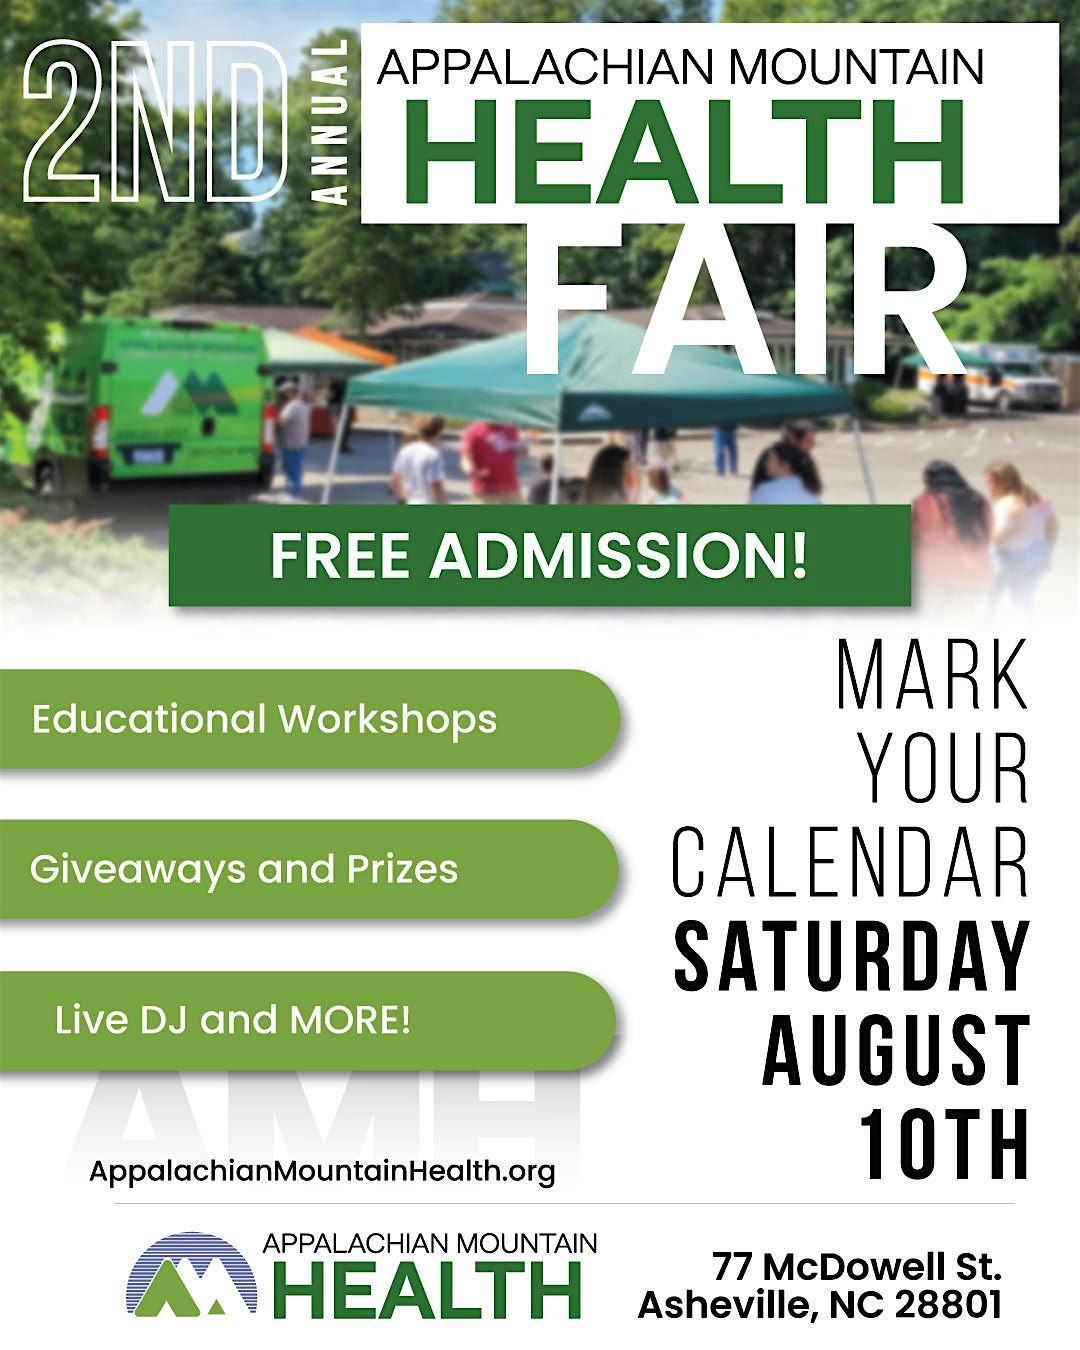 2nd Annual Appalachian Mountain Health Fair